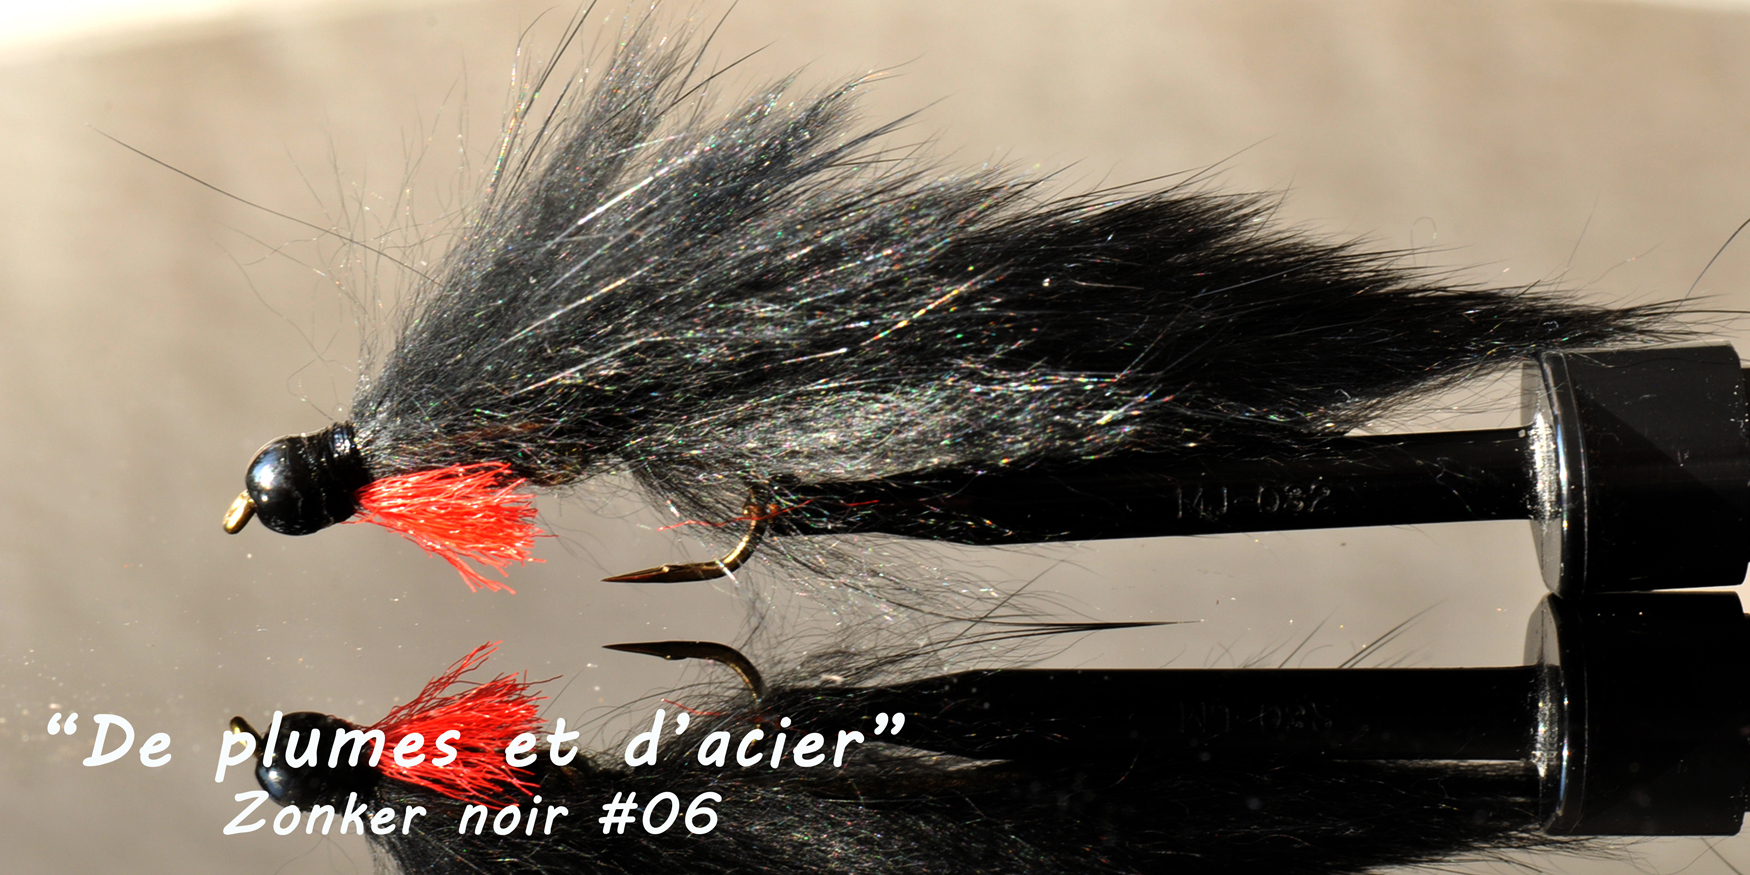 Mouches de pêche "De plumes et d'acier"Zonker noir # 06